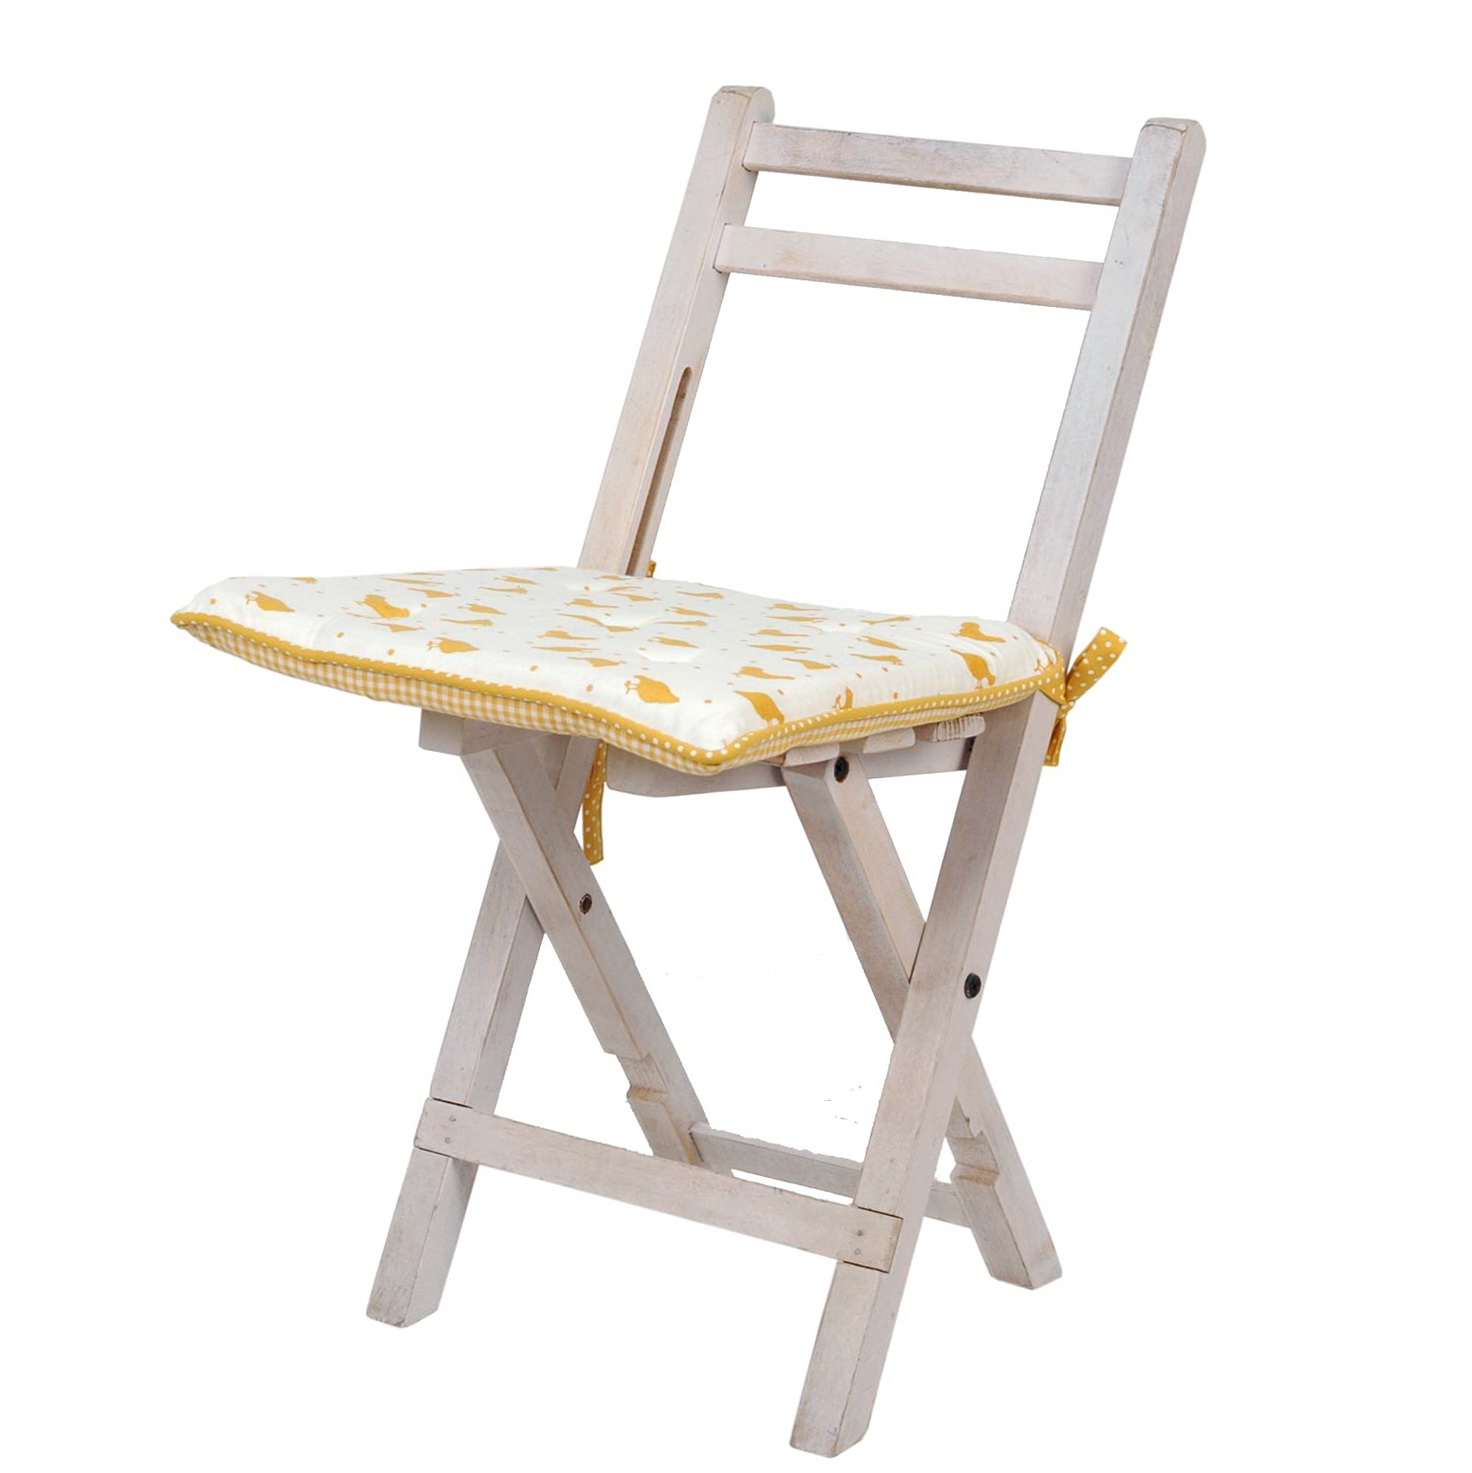 Chair Cushion Foam Replacement | Home Design Ideas